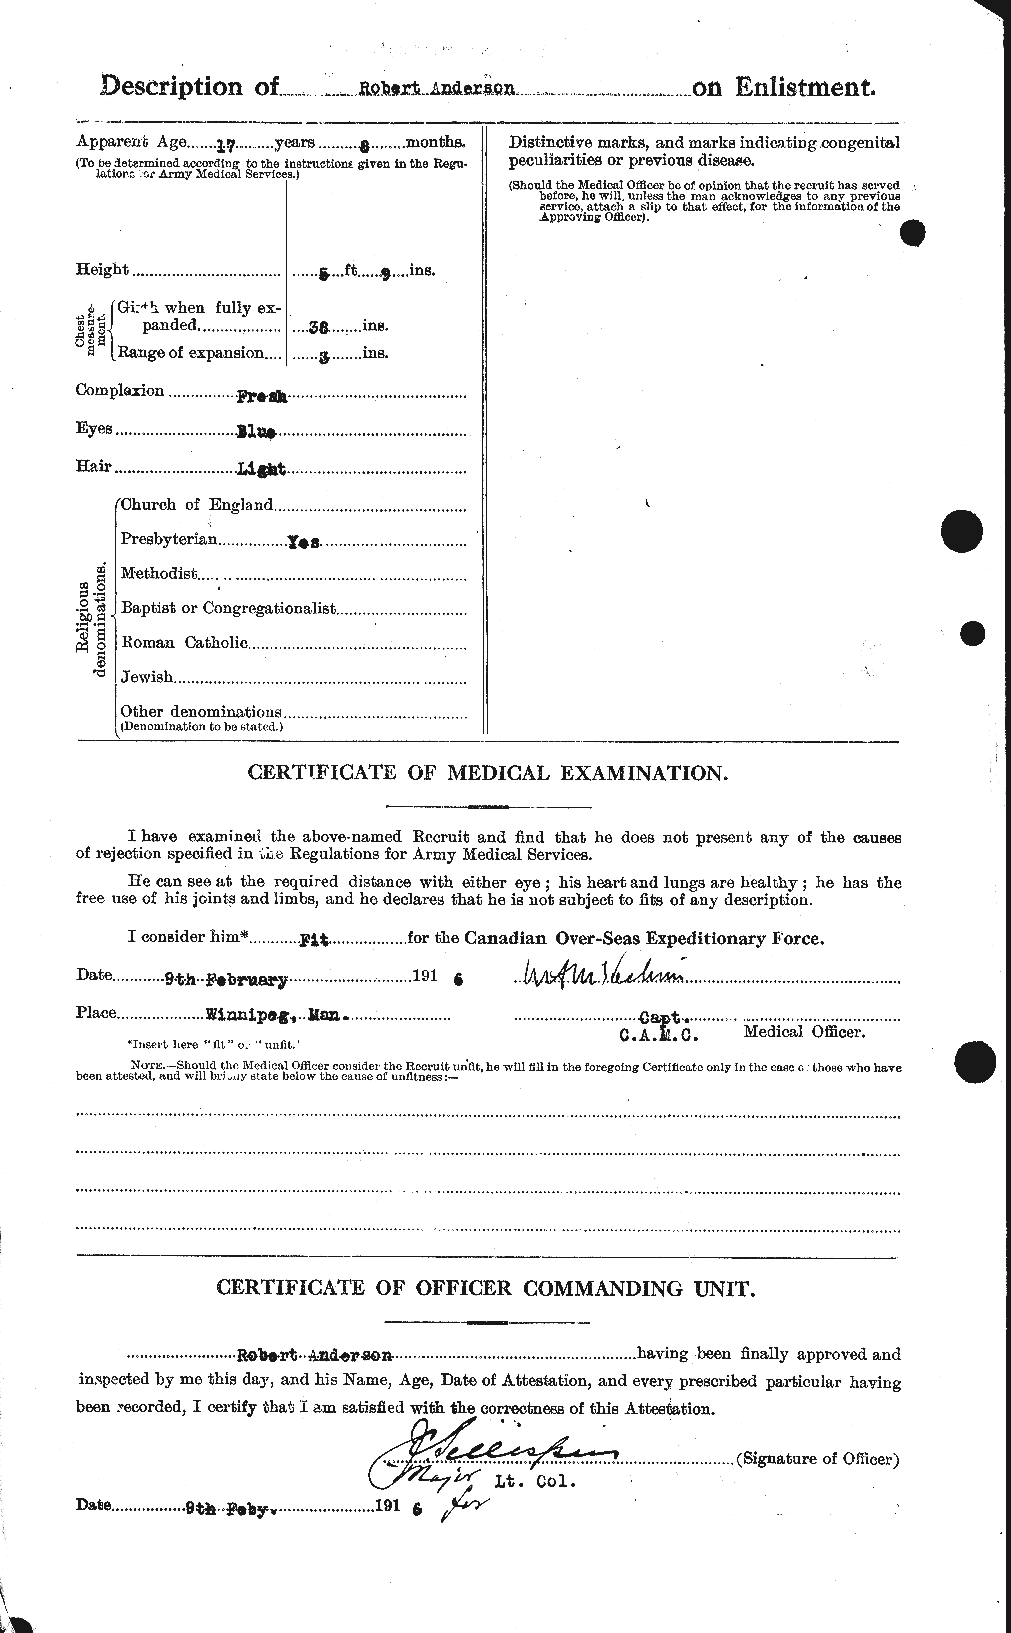 Dossiers du Personnel de la Première Guerre mondiale - CEC 207278b